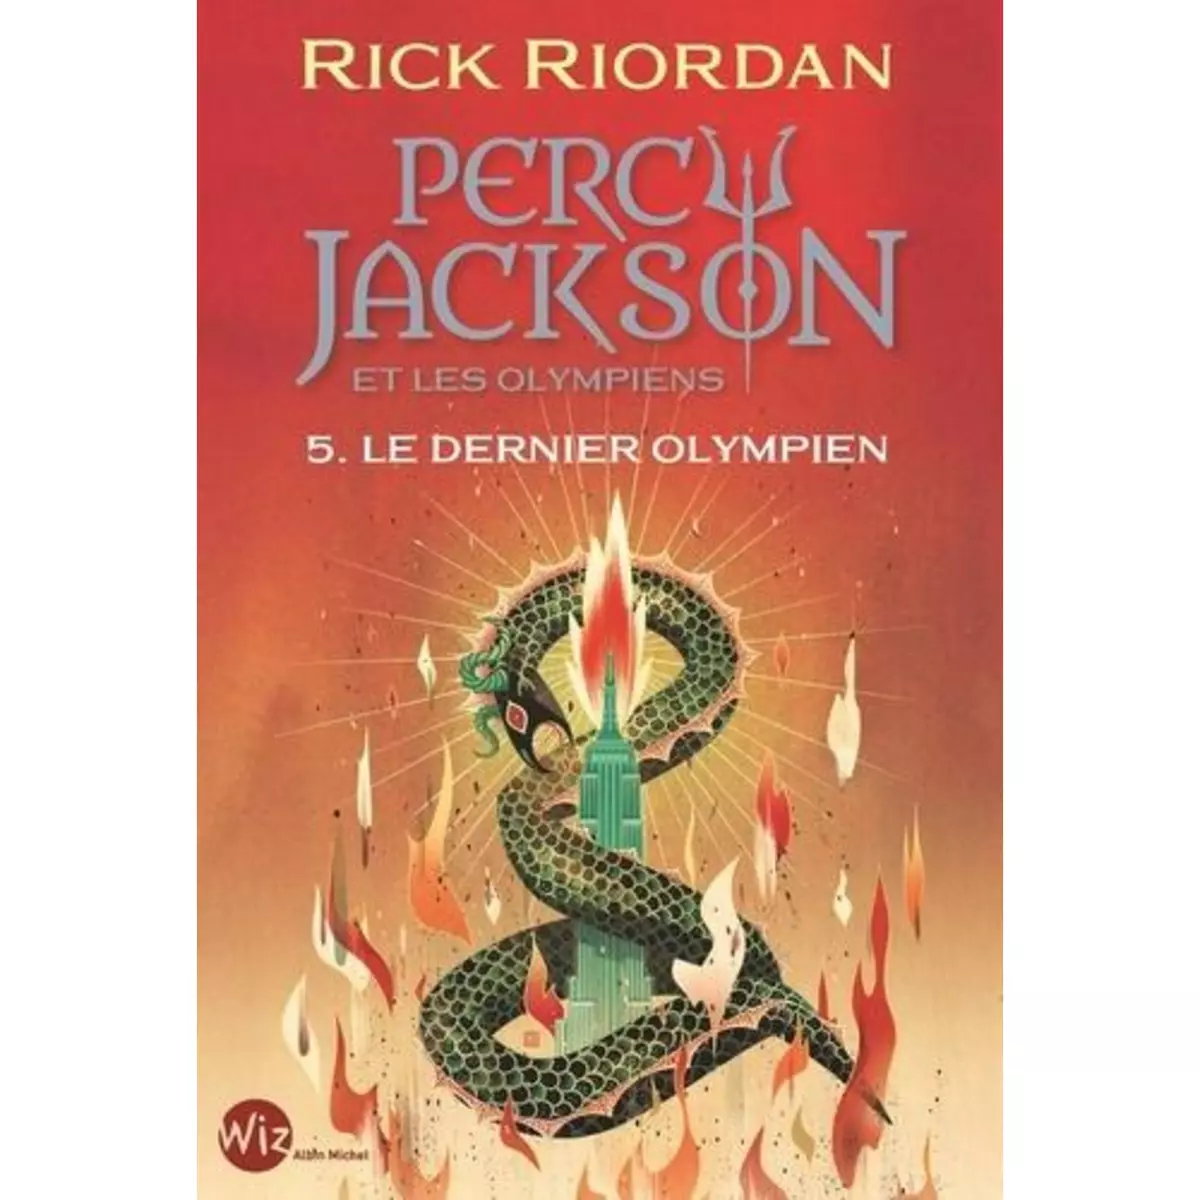  PERCY JACKSON ET LES OLYMPIENS TOME 5 : LE DERNIER OLYMPIEN, Riordan Rick